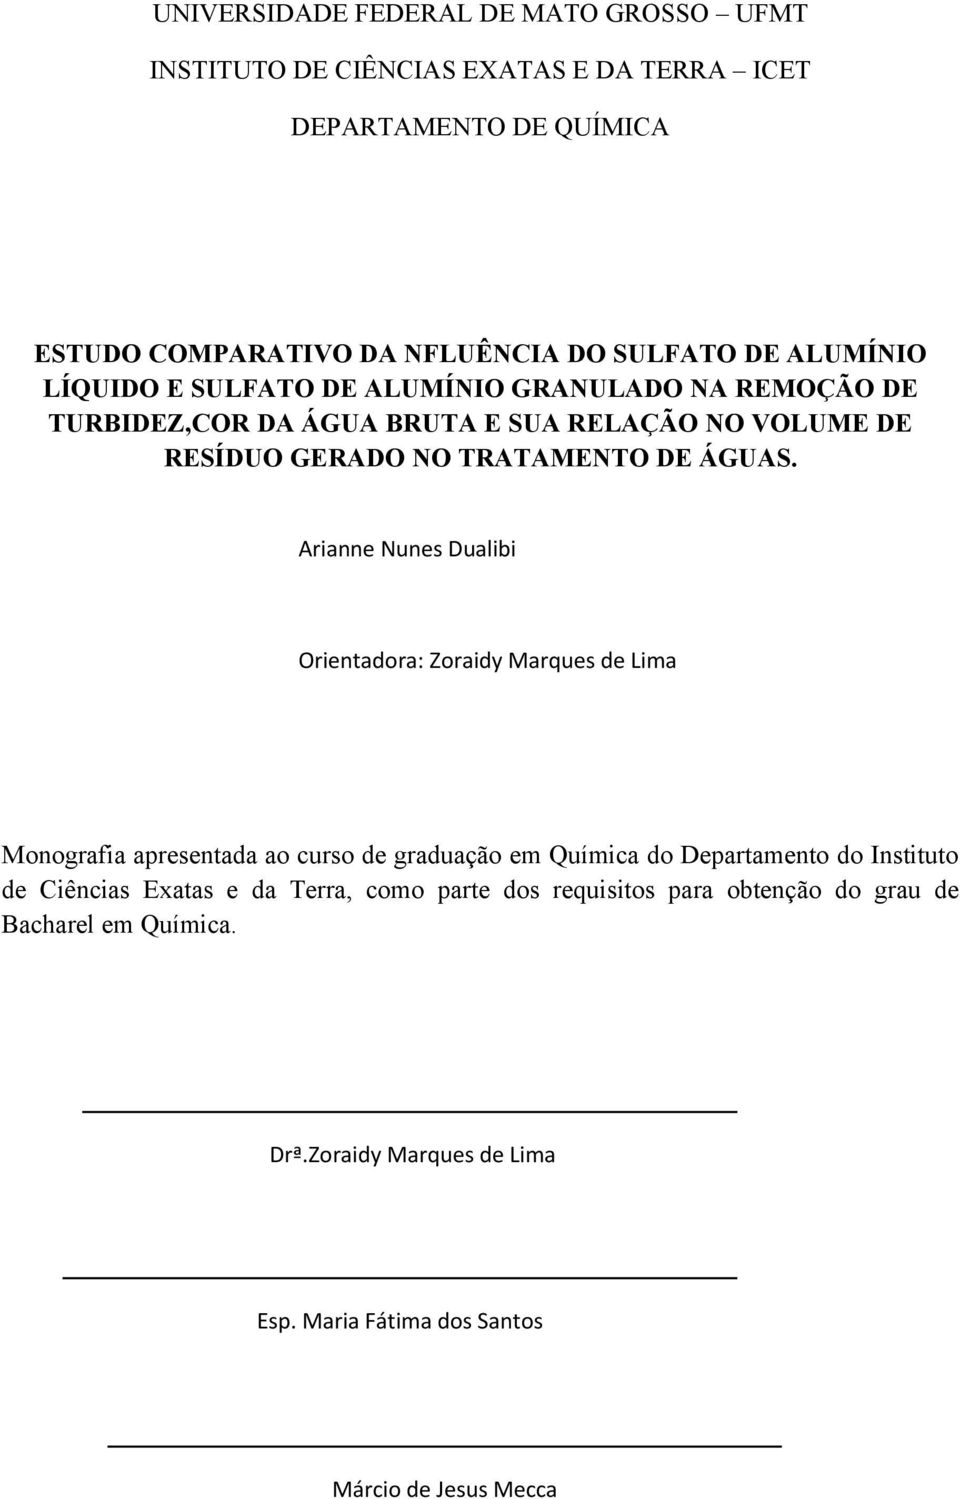 Arianne Nunes Dualibi Orientadora: Zoraidy Marques de Lima Monografia apresentada ao curso de graduação em Química do Departamento do Instituto de Ciências